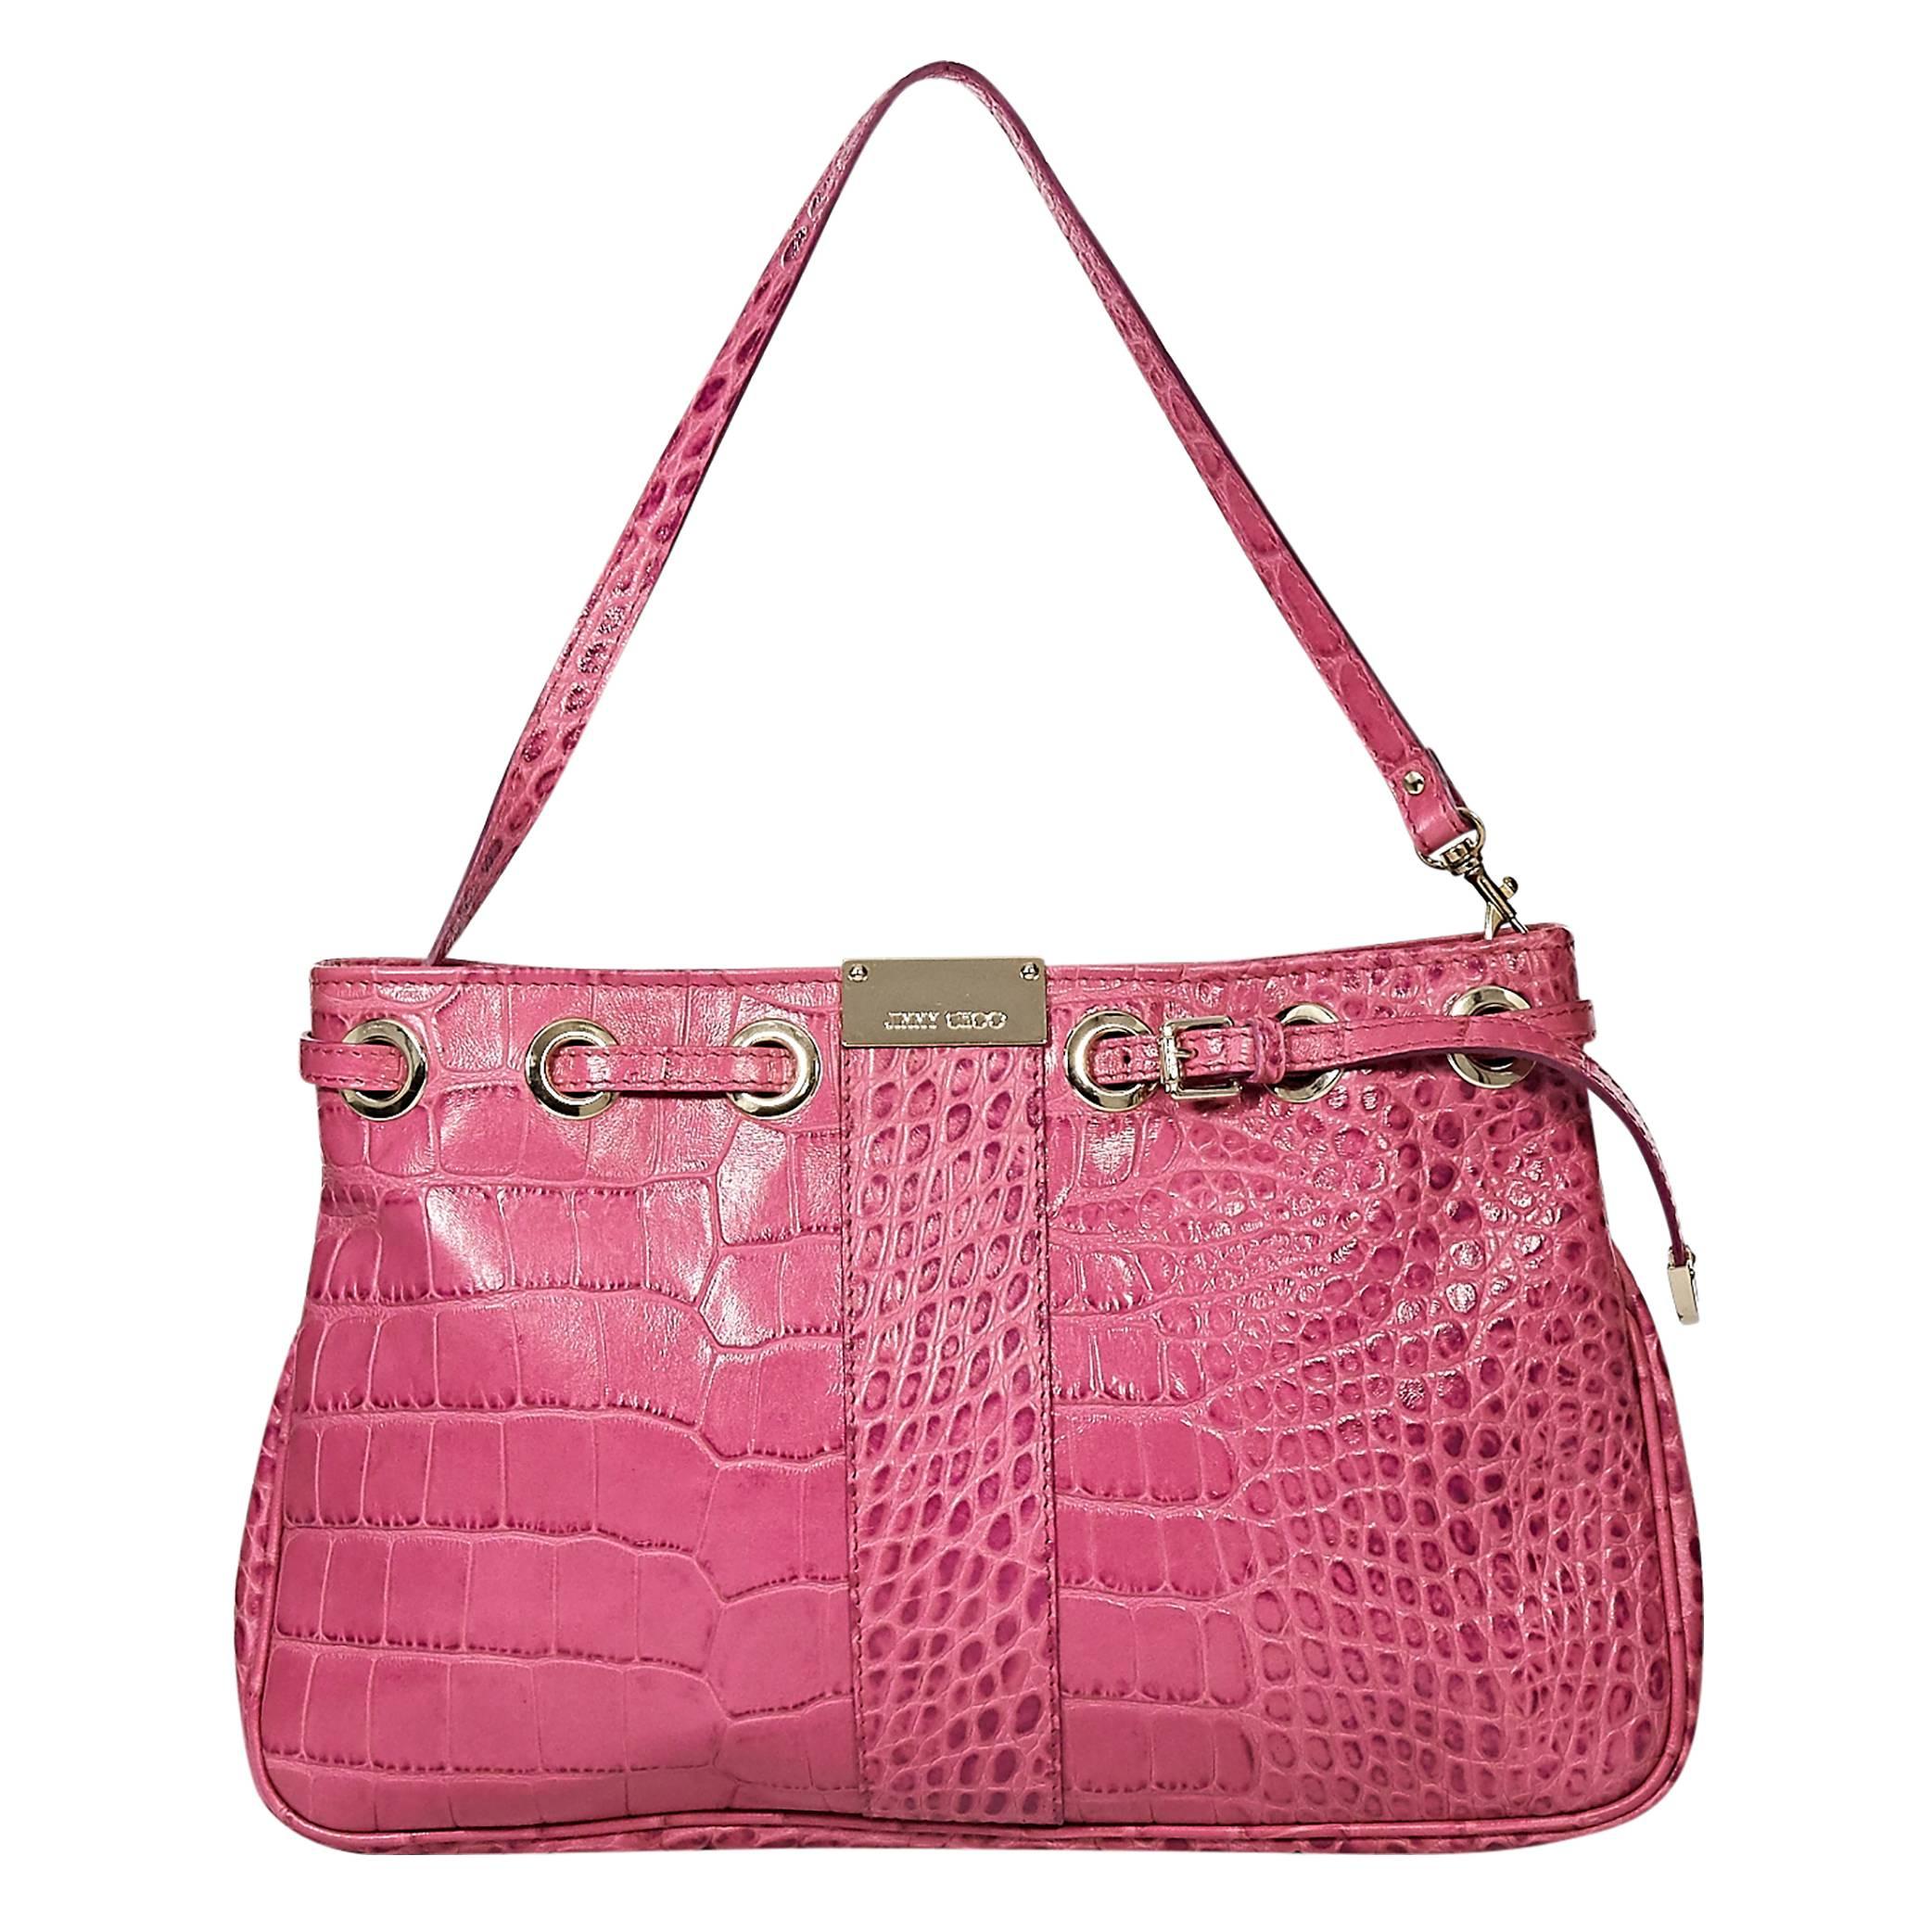 Pink Jimmy Choo Embossed Leather Shoulder Bag